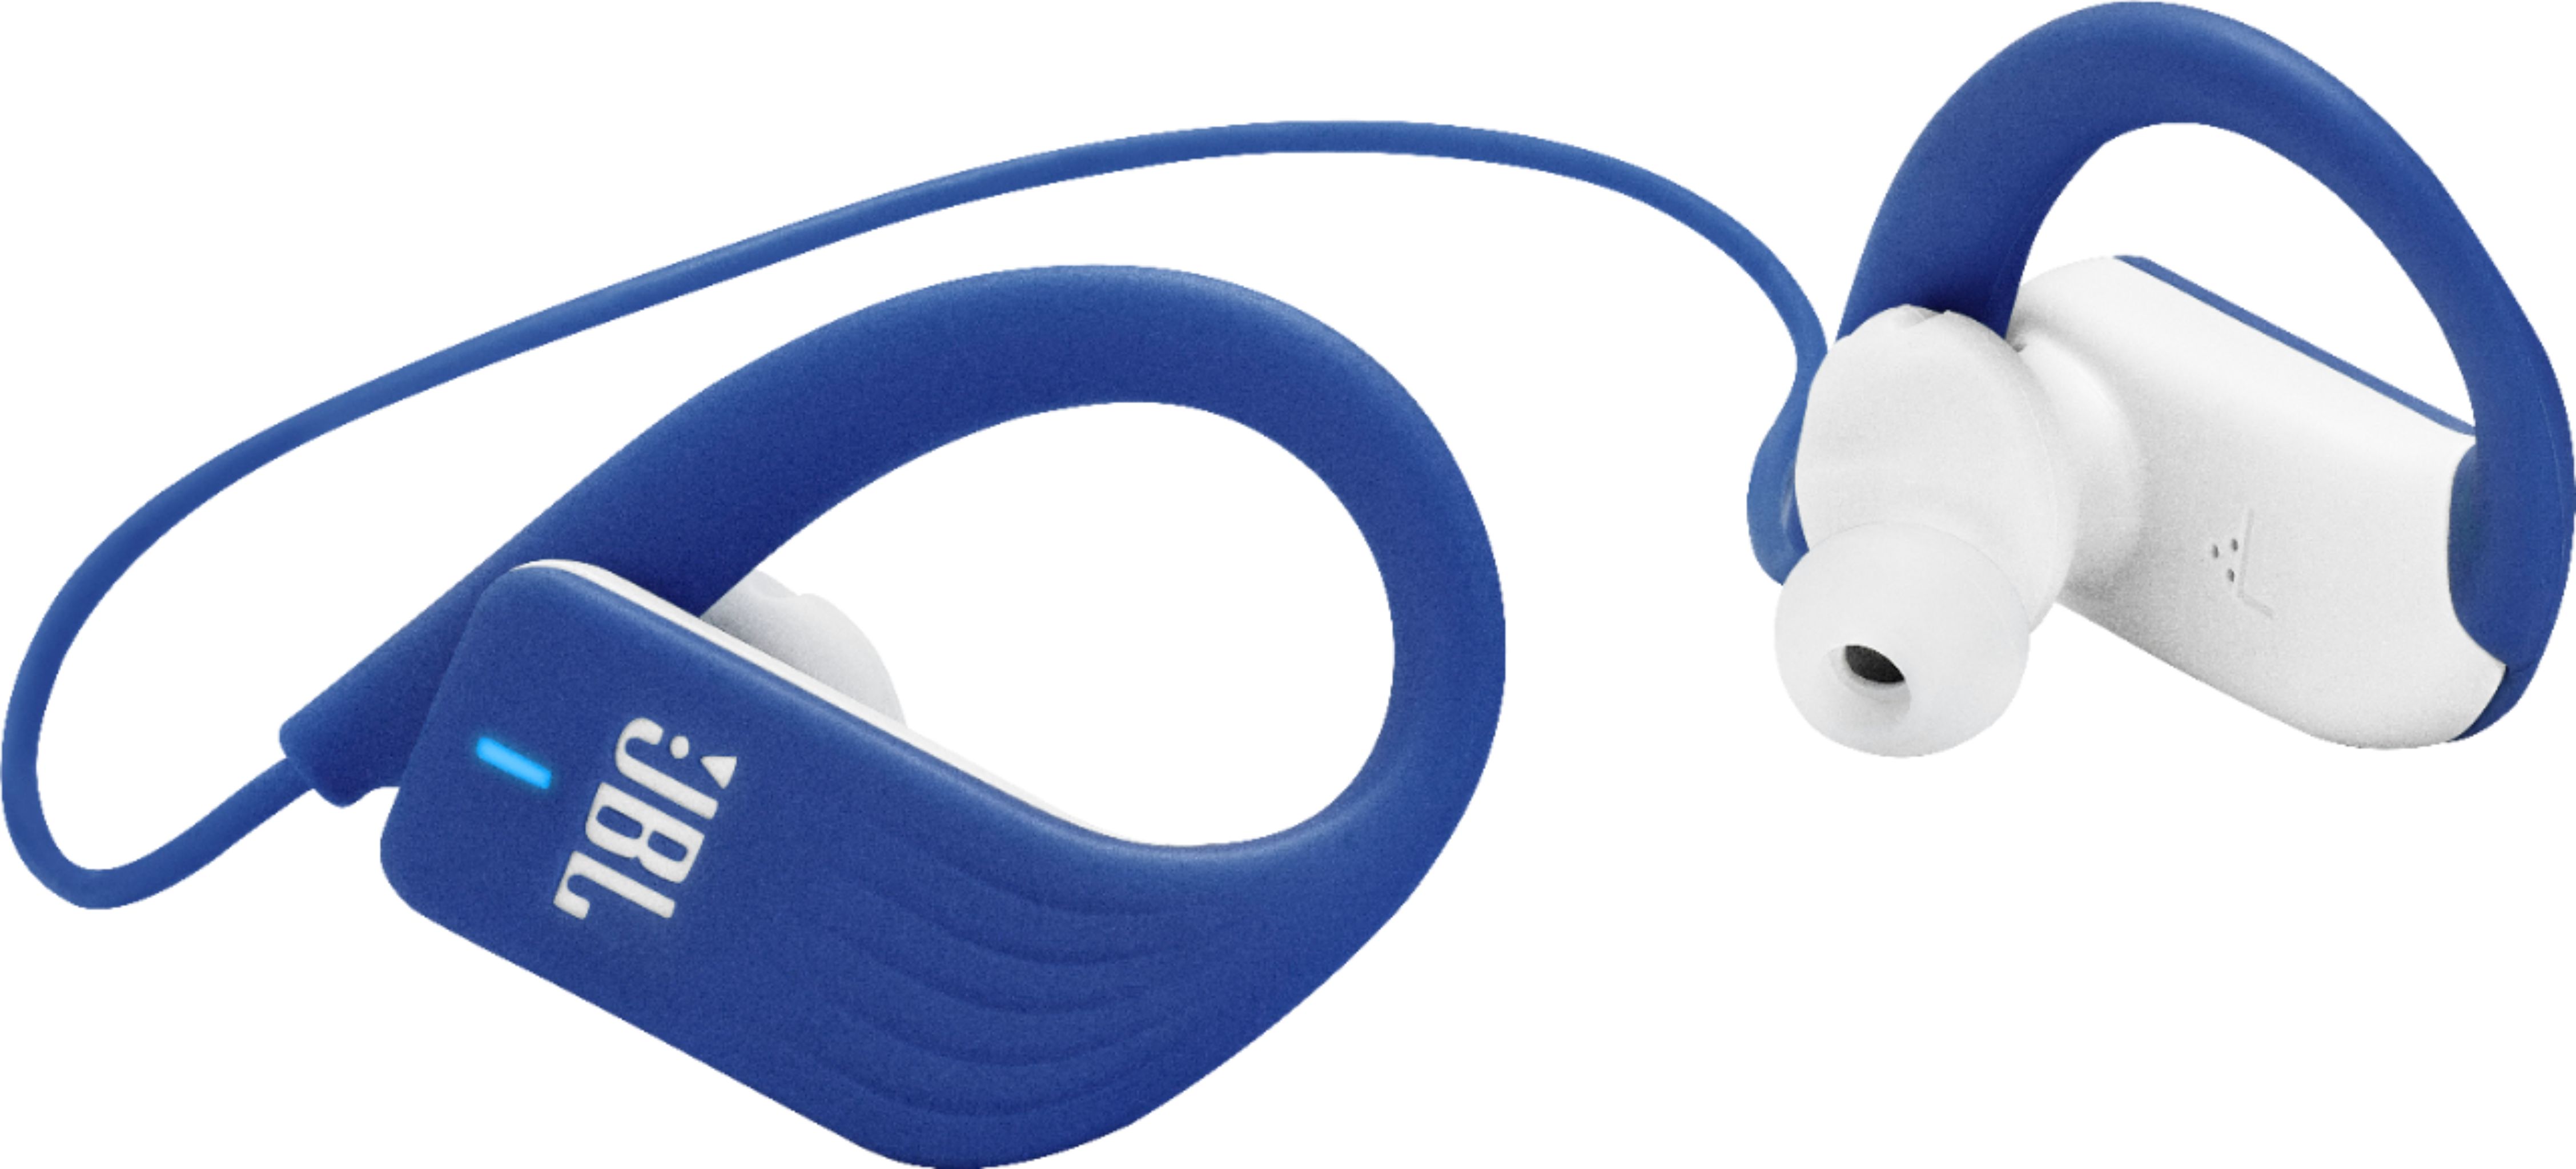 Customer Reviews: JBL Endurance Sprint Wireless In-Ear Blue - Best Buy